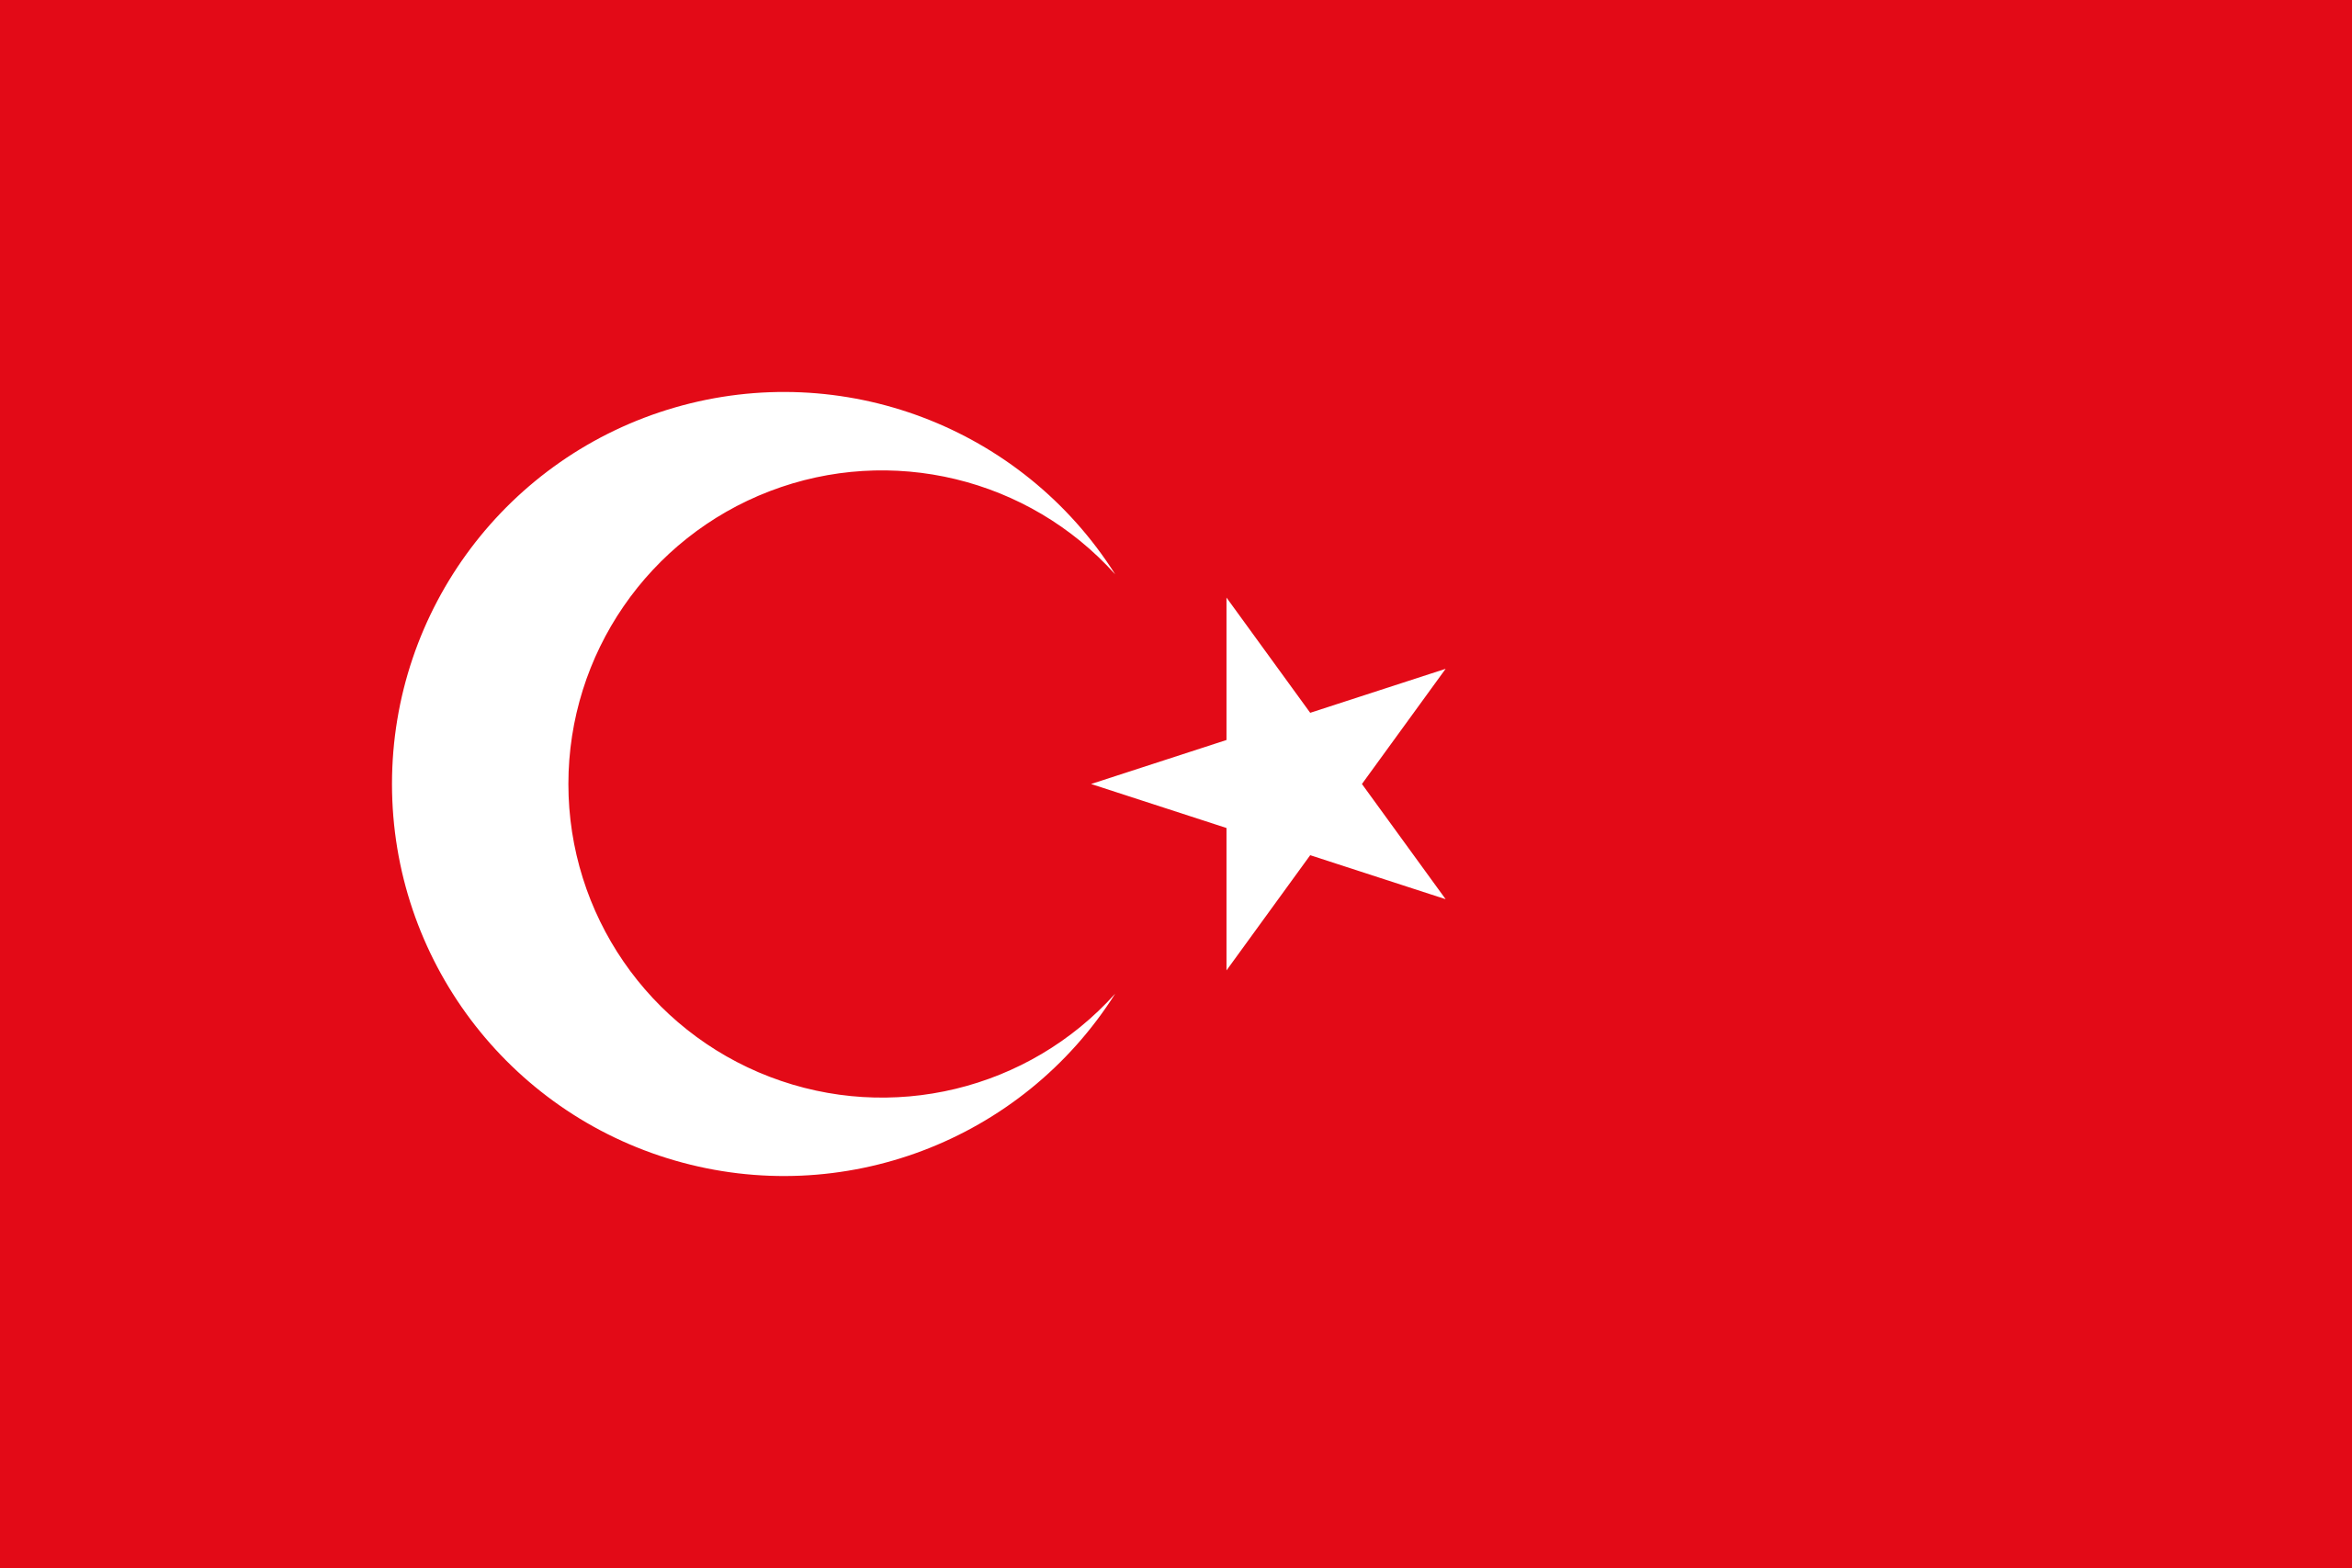 File:Turkey flag.png